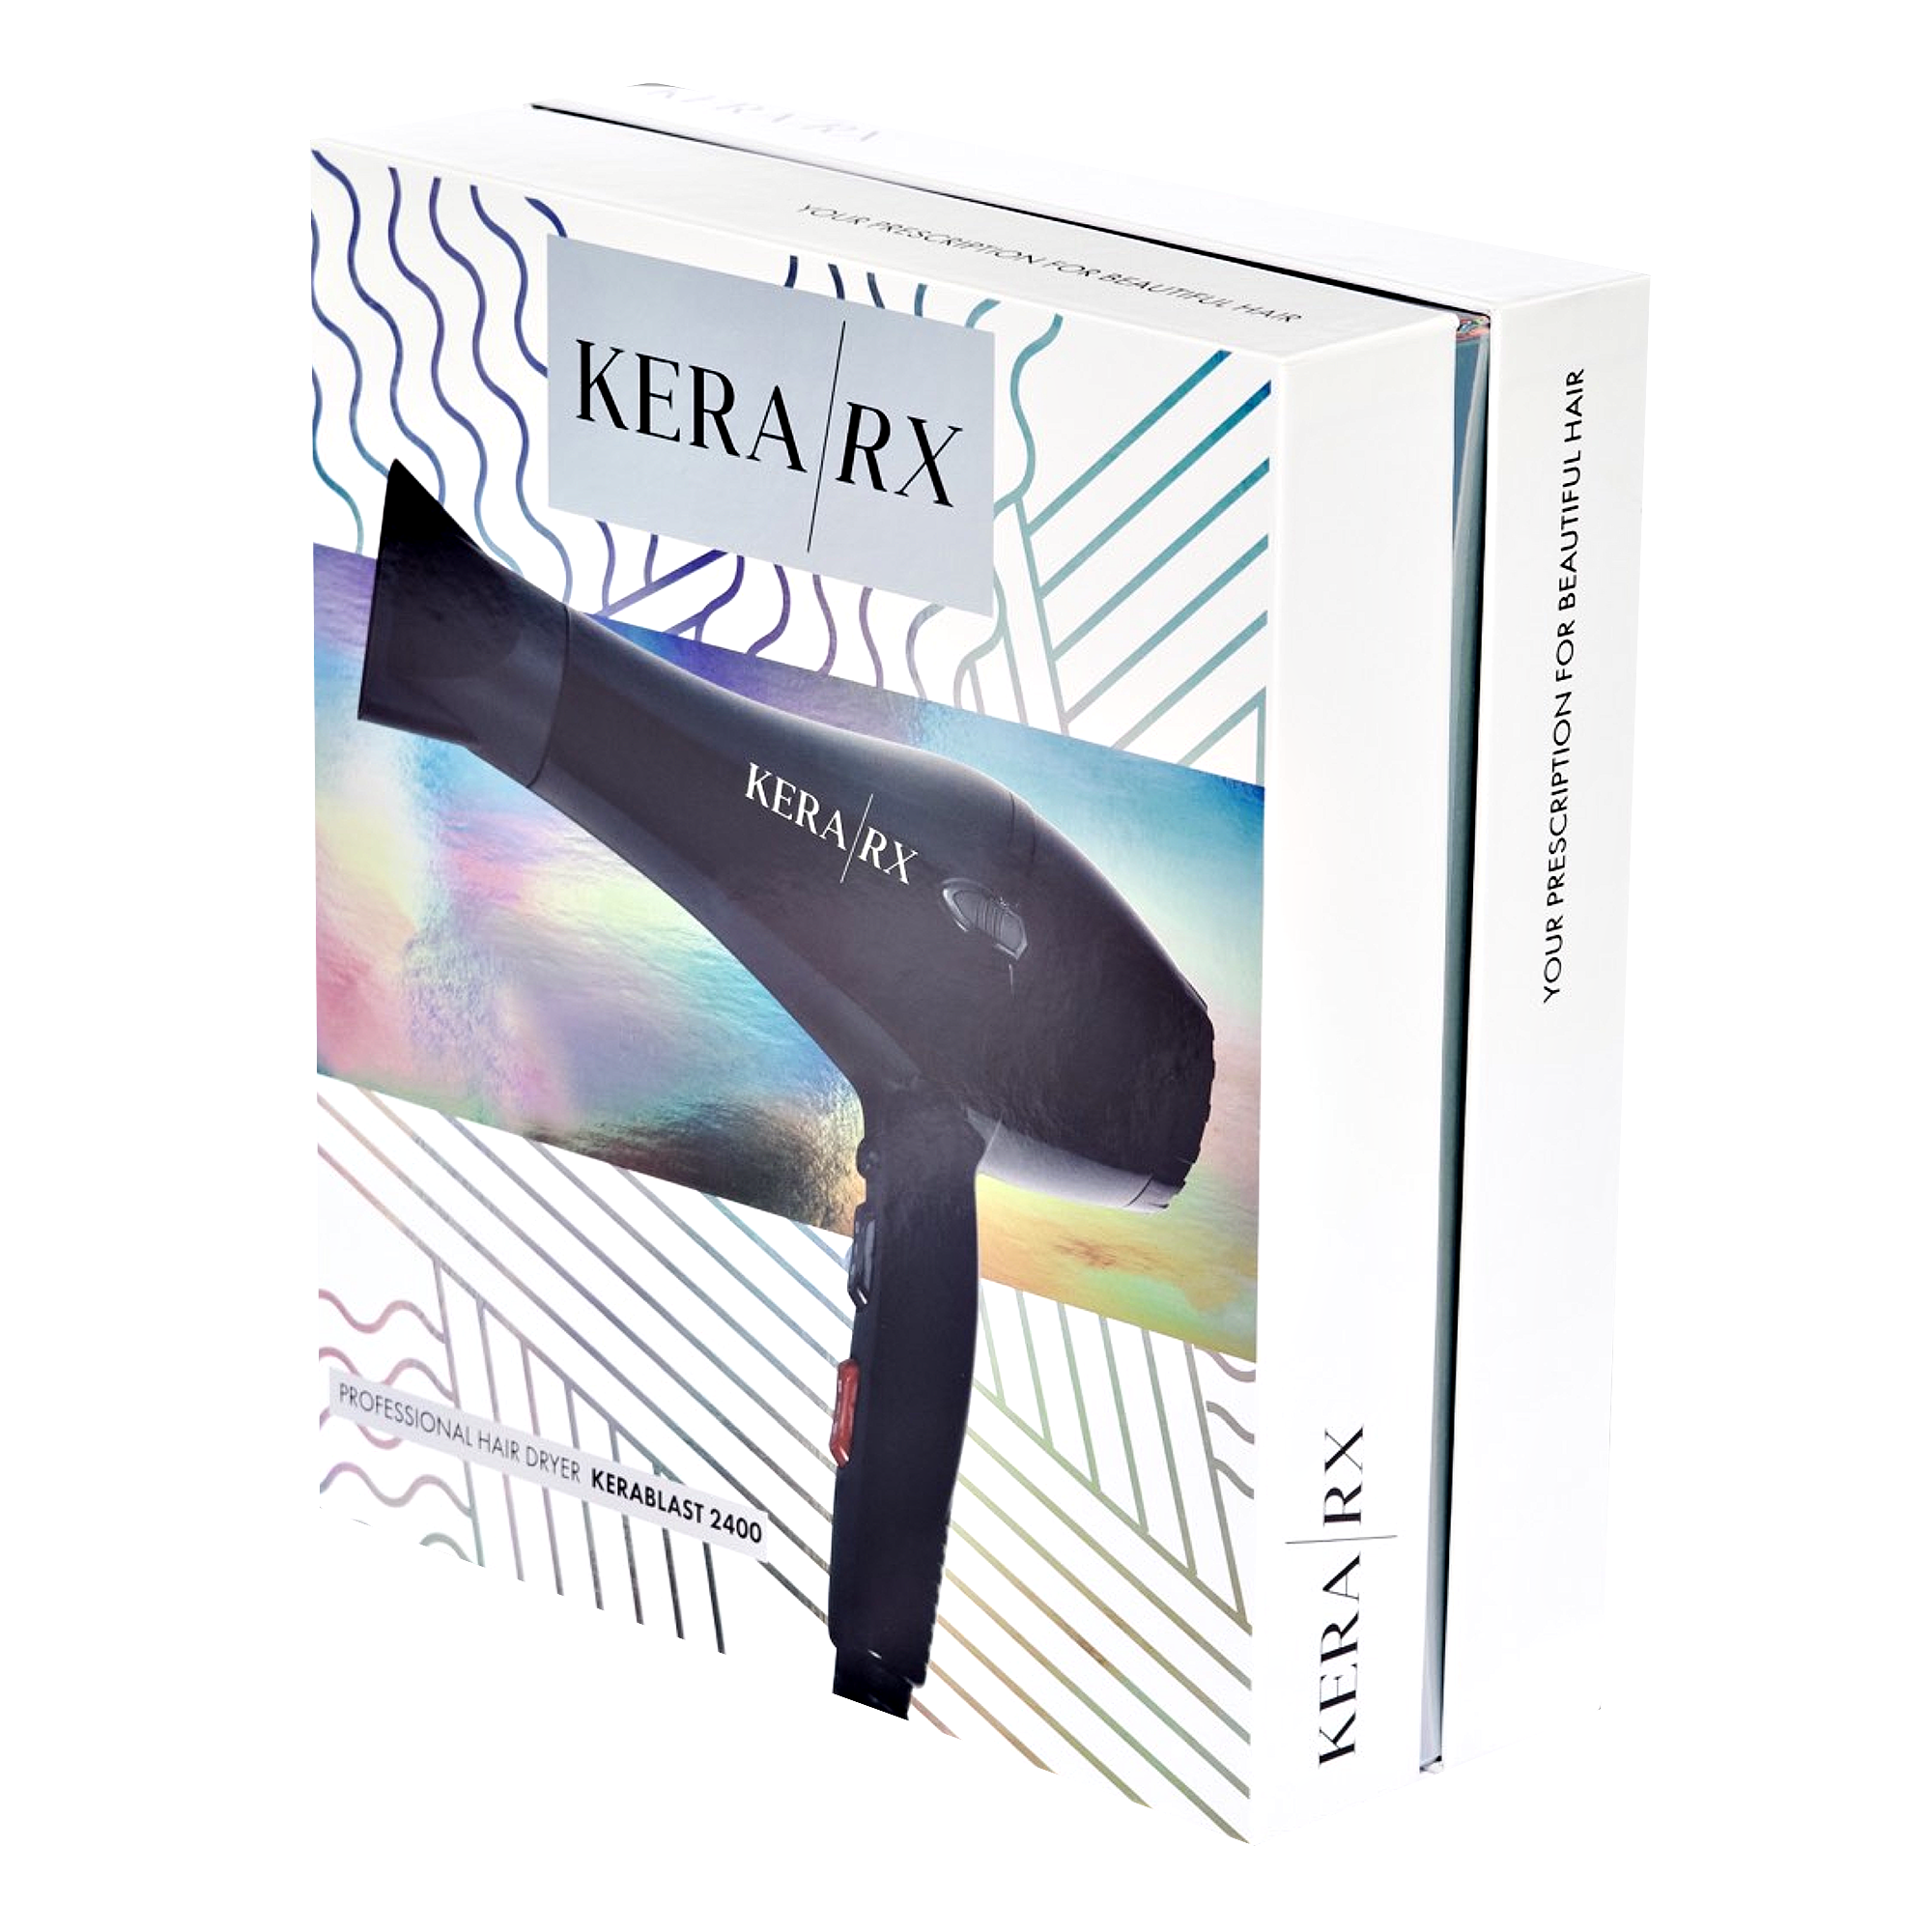 KeraRx Professional Hair Dryer | KERABLAST 2400 | Kera/RX Haircare